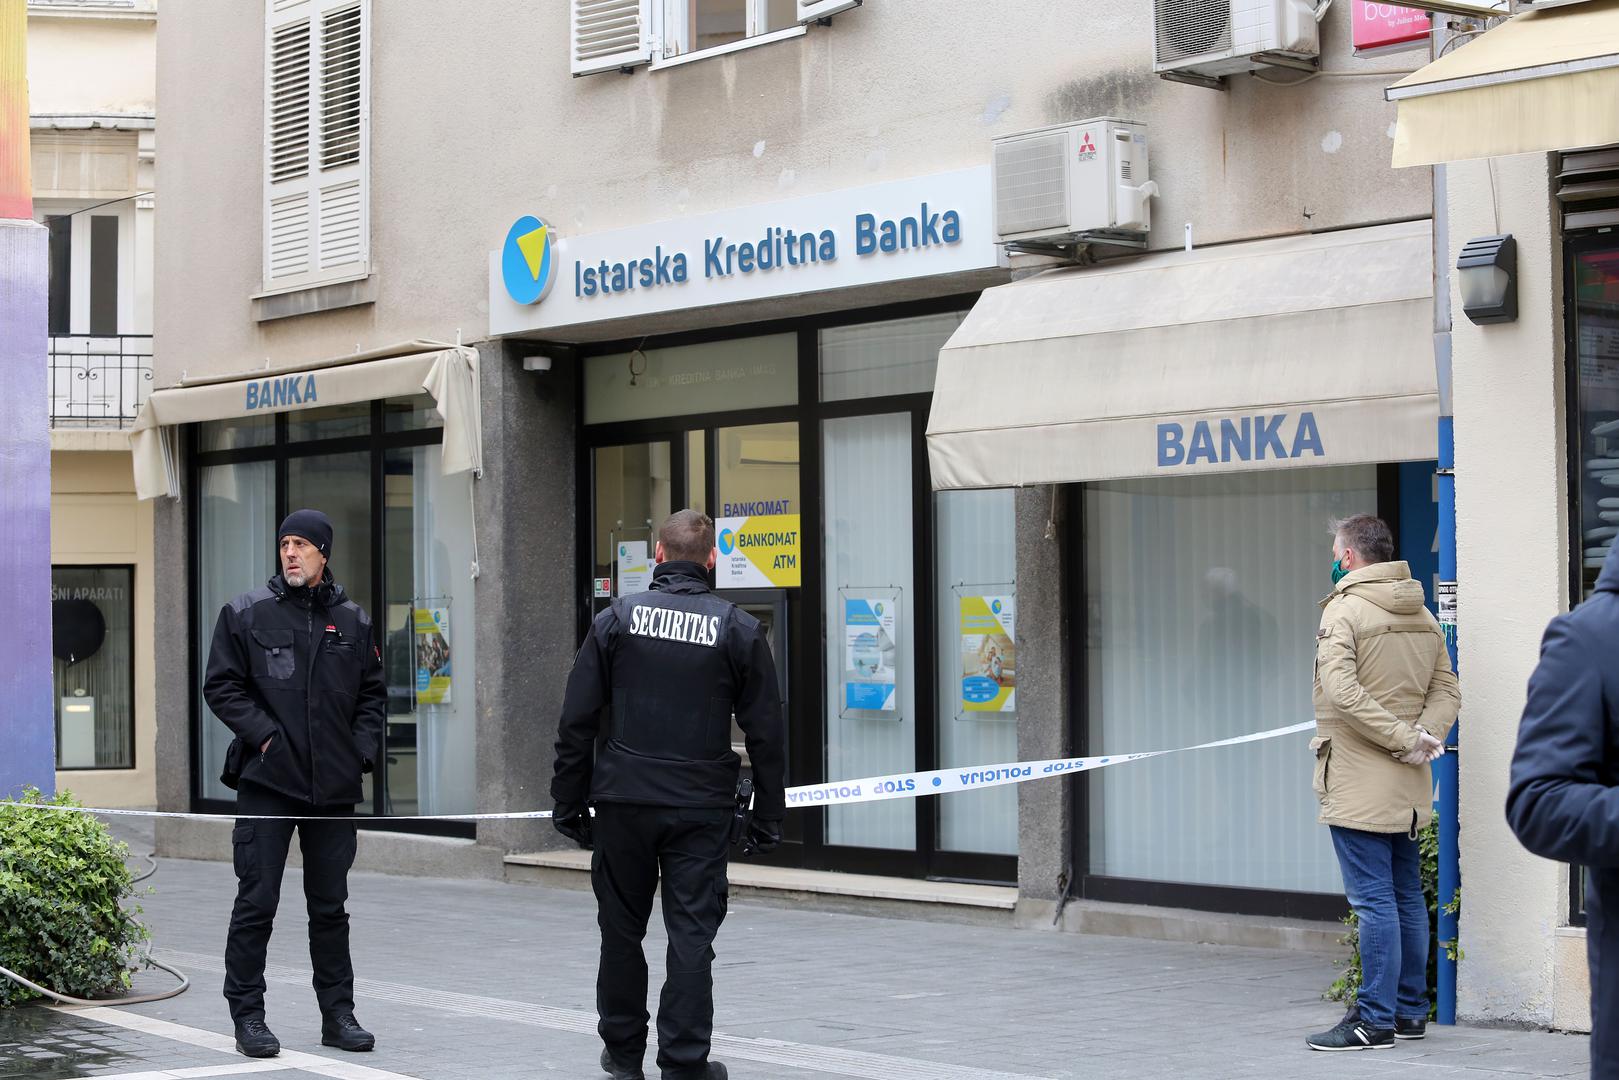 Razbojništvo u poslovnici banke u Ulici Janeza Trdine dogodilo se u 8.30 sati.

